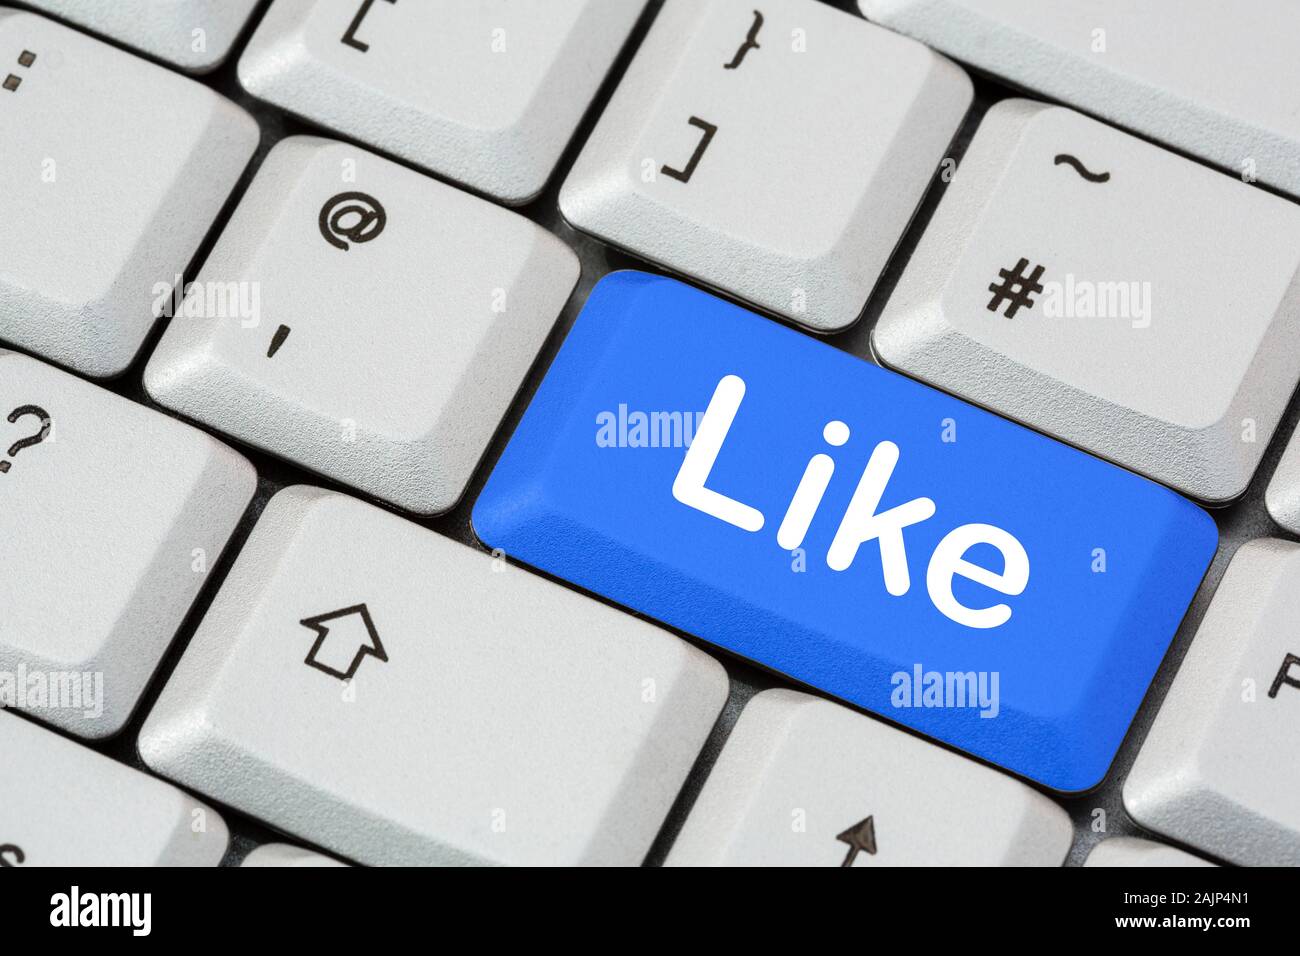 Eine Tastatur mit dem Wort wie in weißer Schrift auf einer blauen ENTER-Taste. Konzept für soziale Medien und Facebook-Netzwerke. England, Großbritannien, Großbritannien Stockfoto